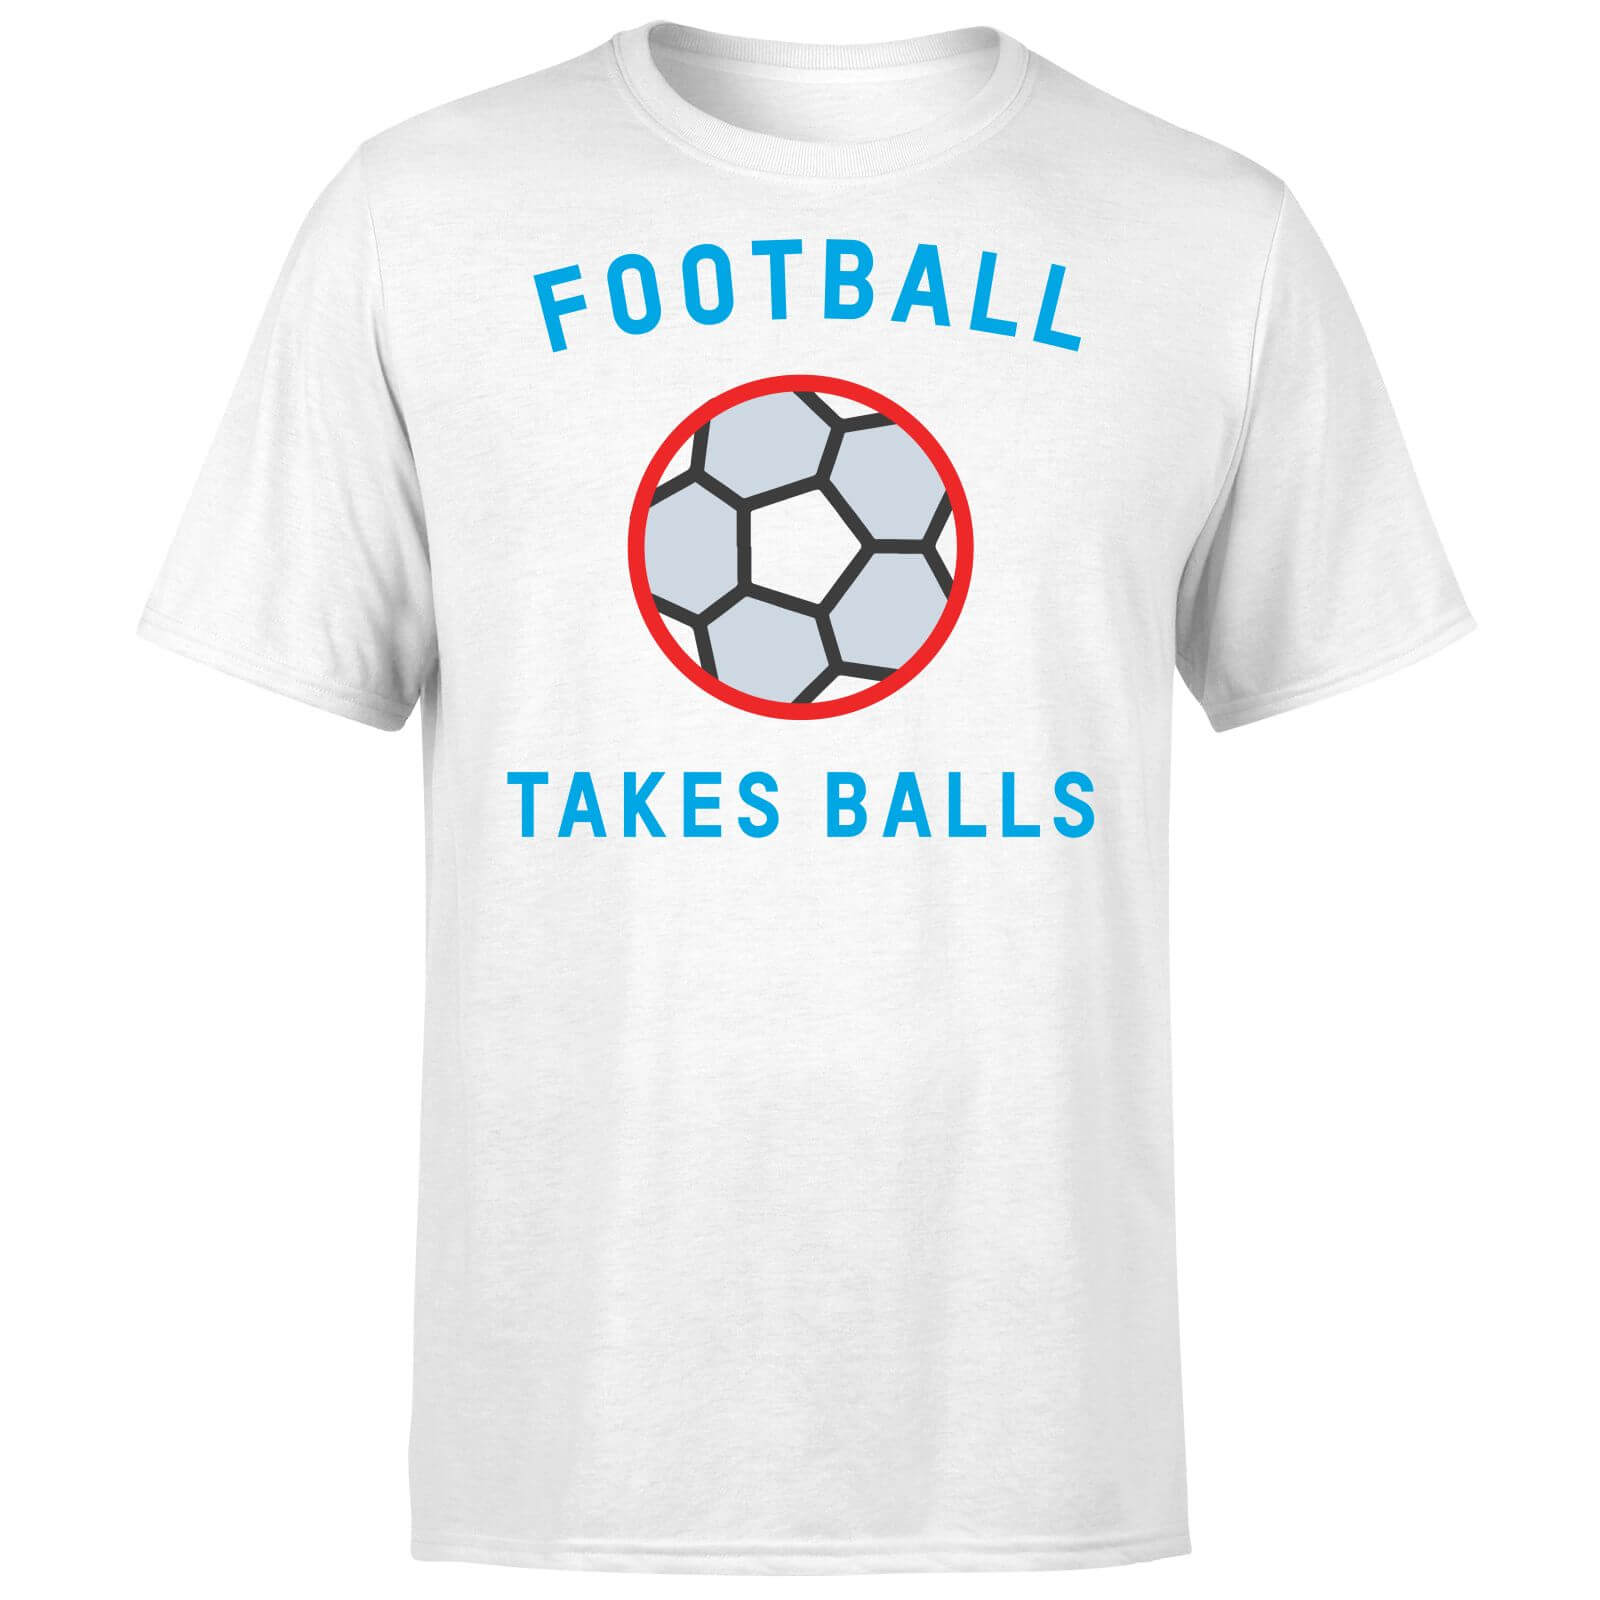 Football Takes Balls T-Shirt - White - S - White